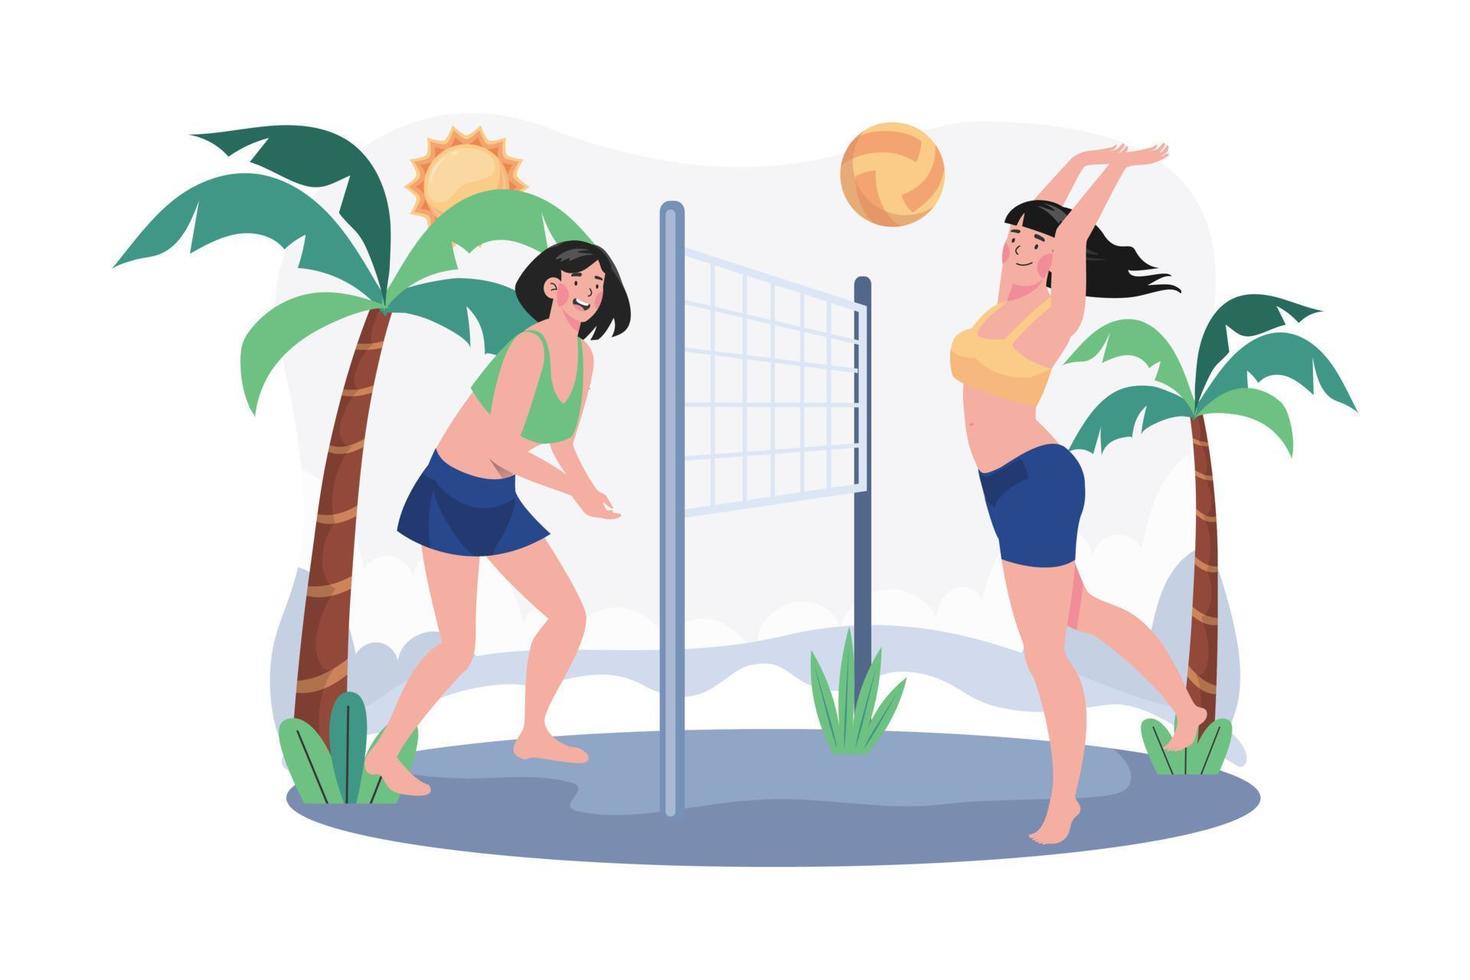 niña jugando voleibol de playa concepto de ilustración sobre fondo blanco vector